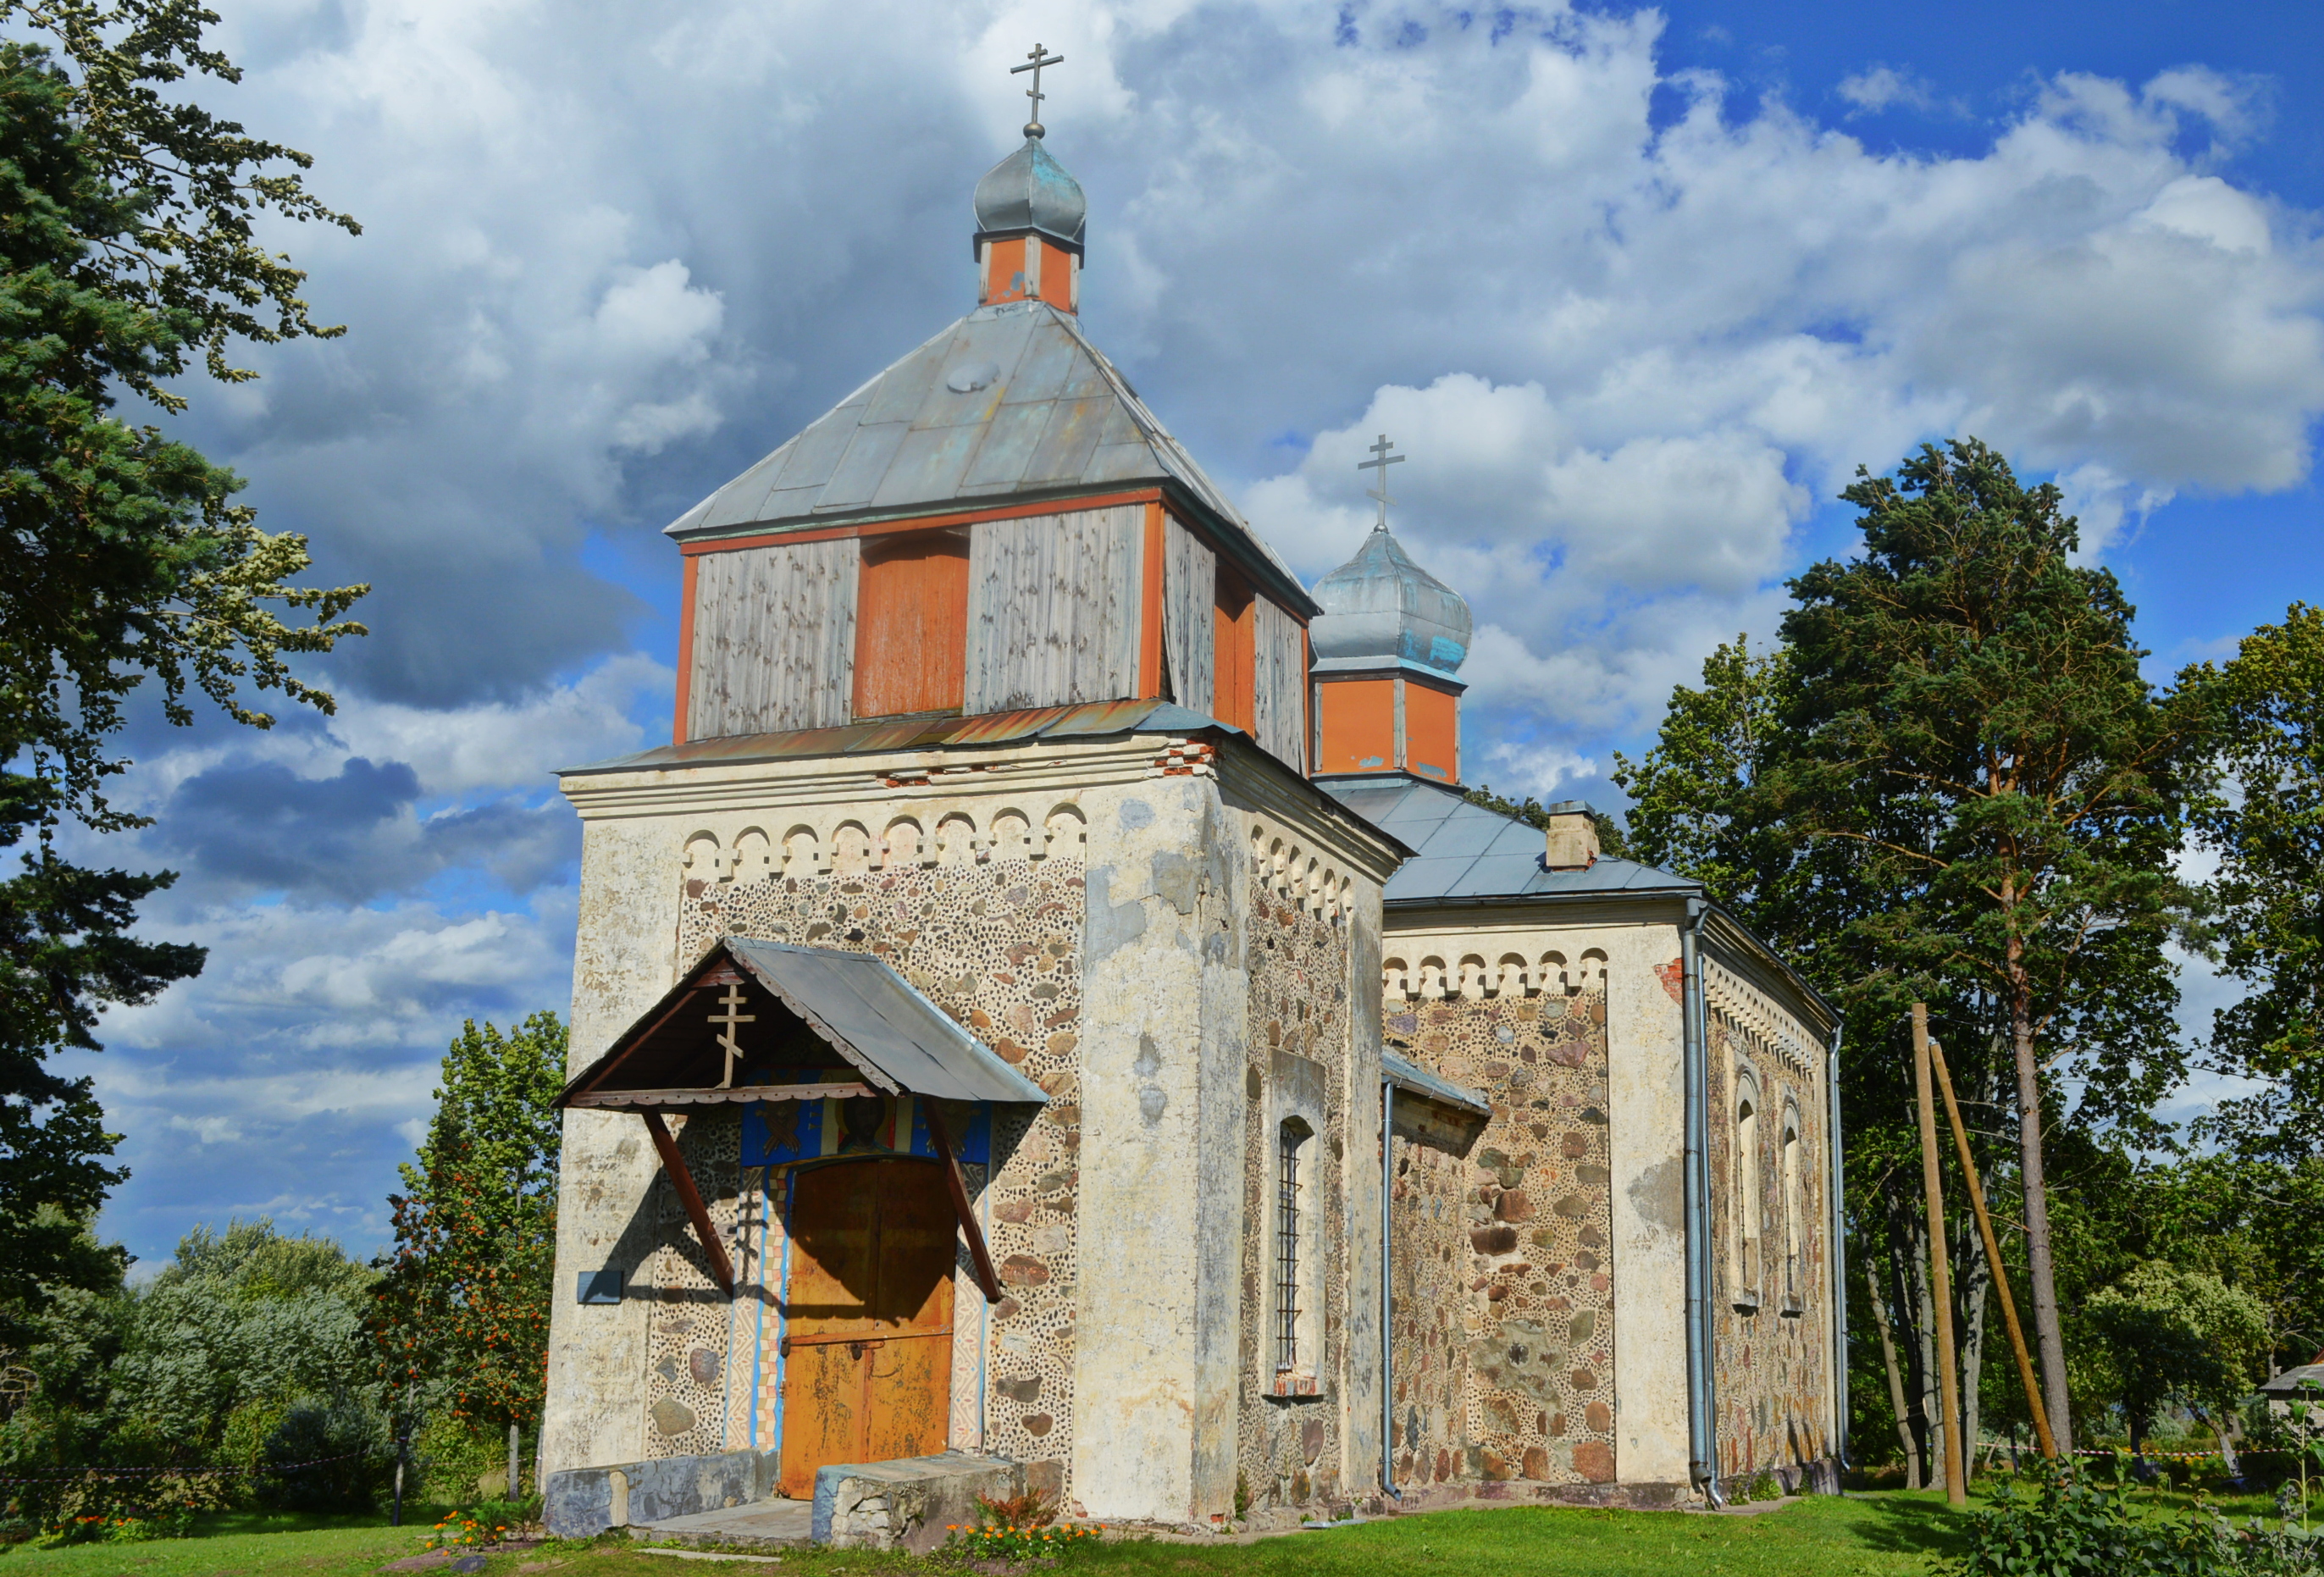 Maskovska’s (Moscow) St. Virgin Shelter Orthodox Church